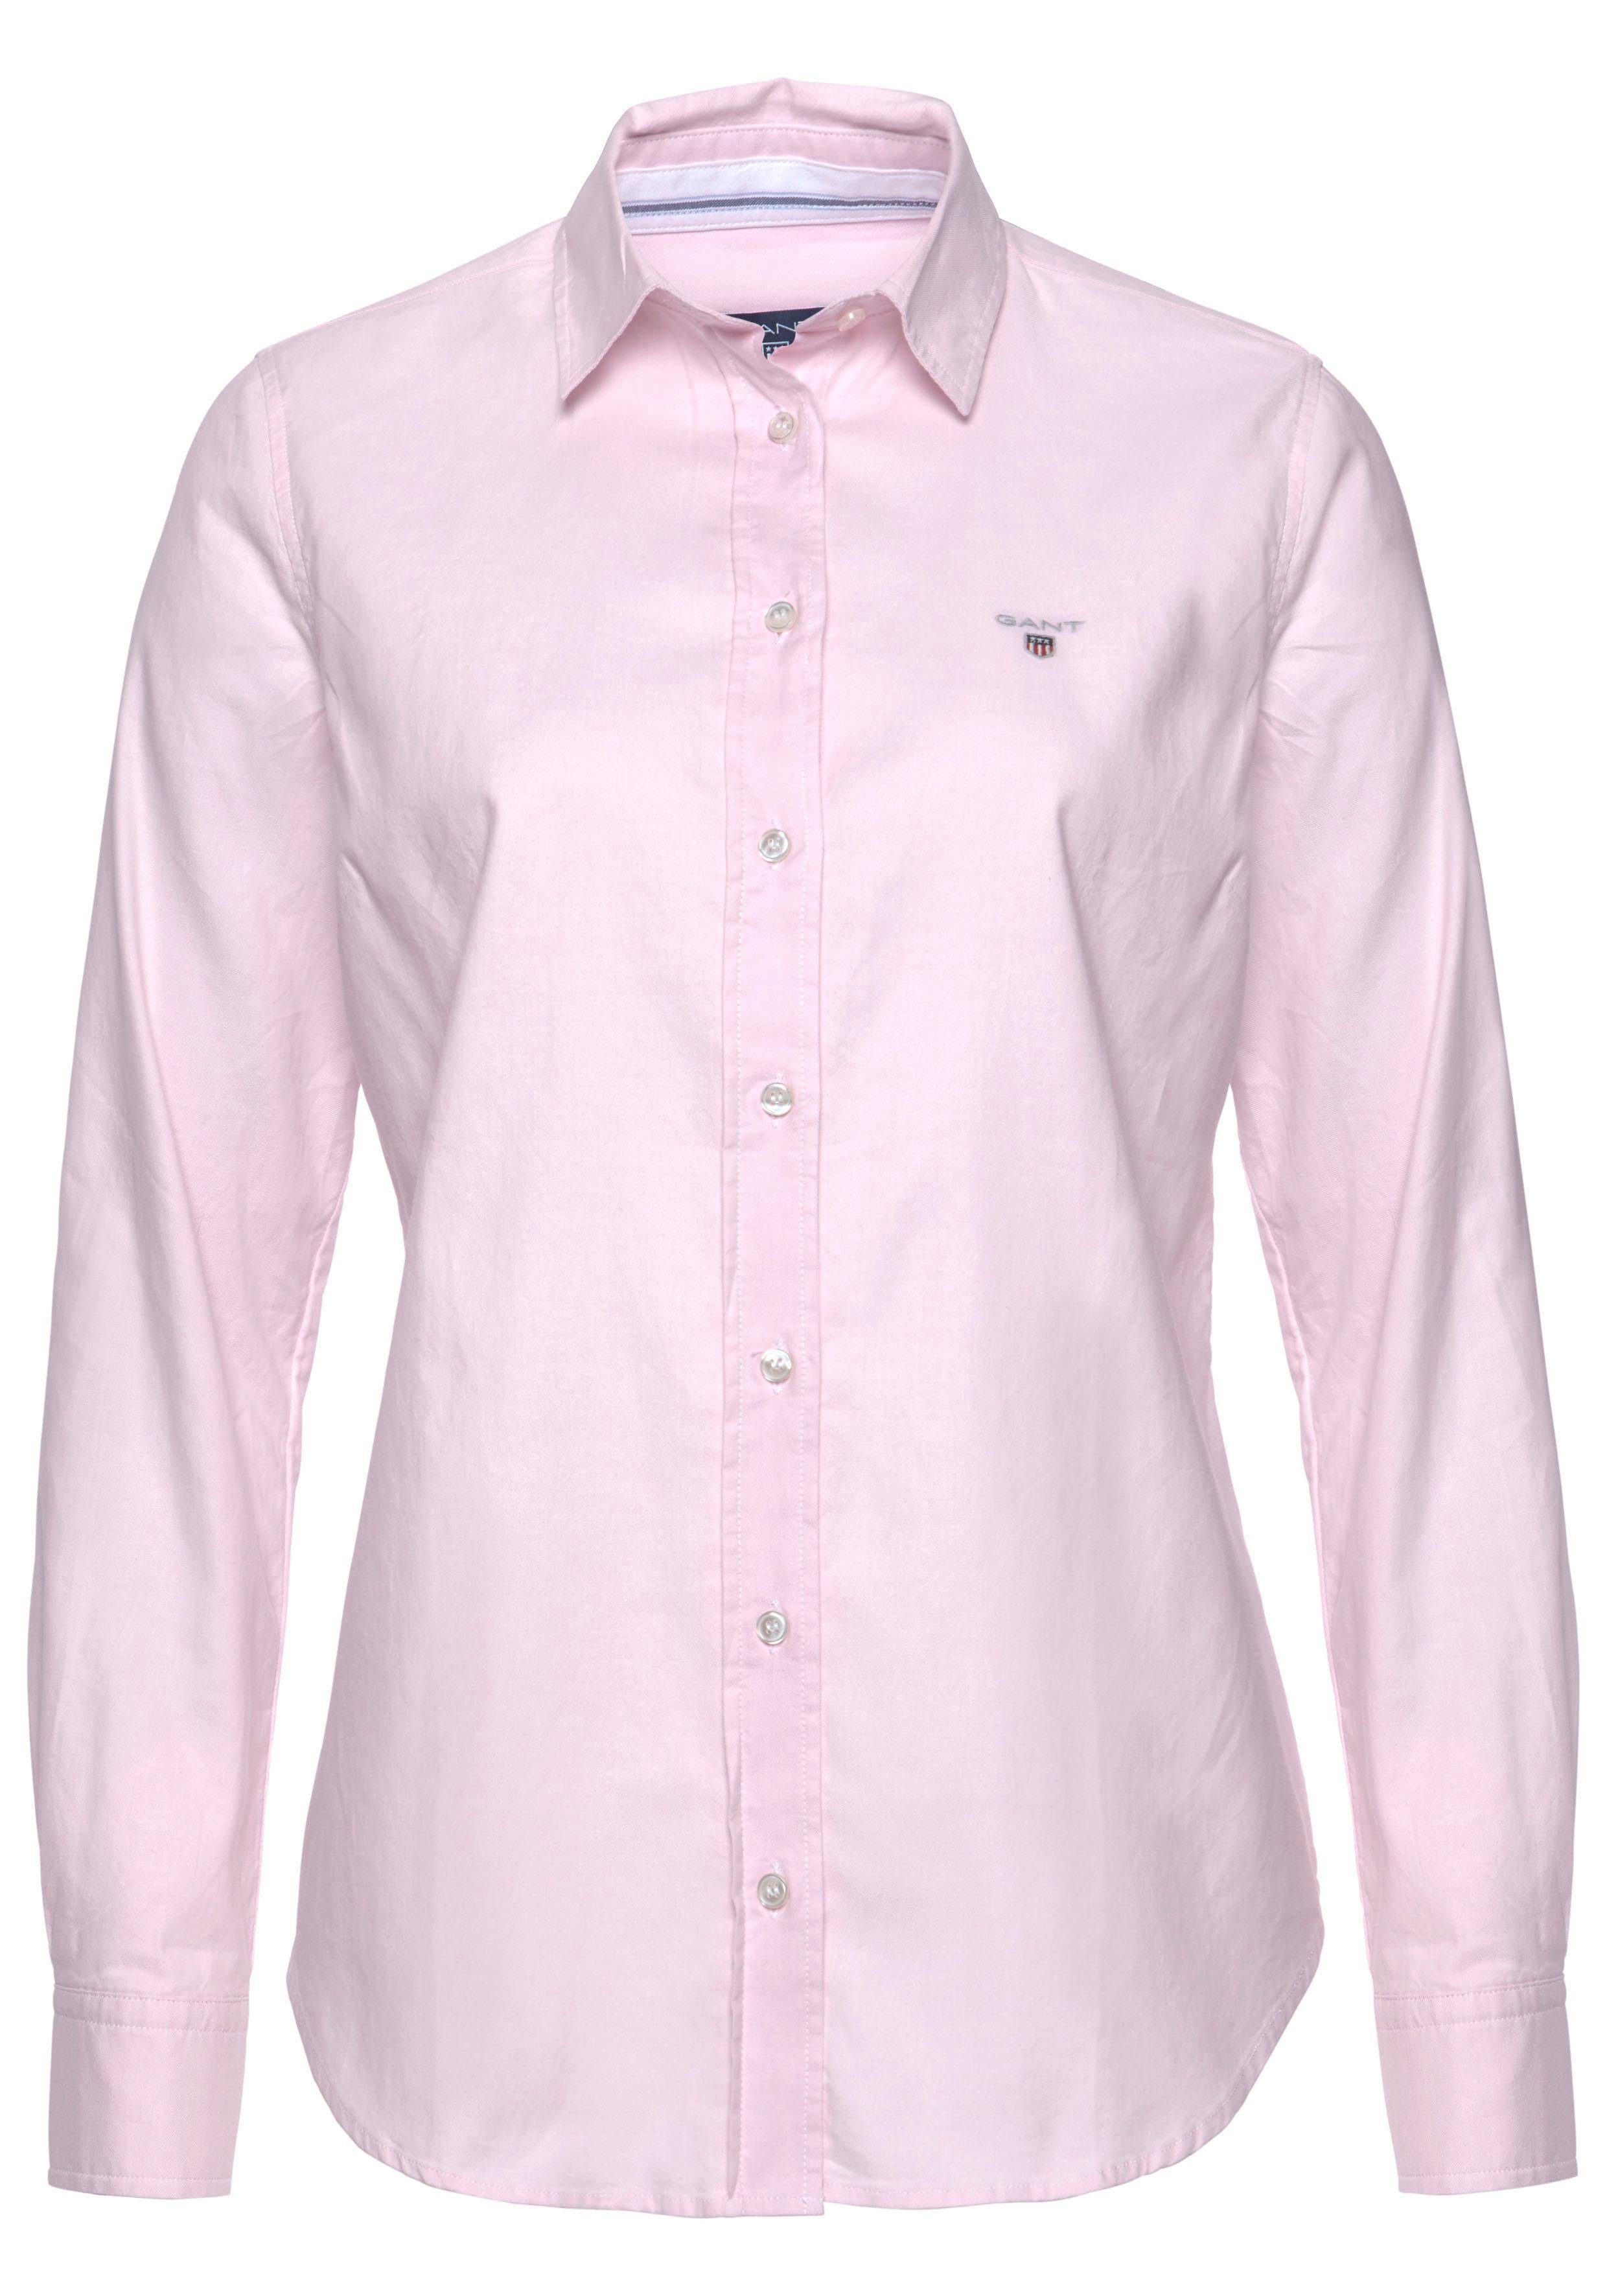 Gant Hemdbluse Stretch-Oxford-Stoff für pink Sitz u. bequemen Bewegungsfreiheit light